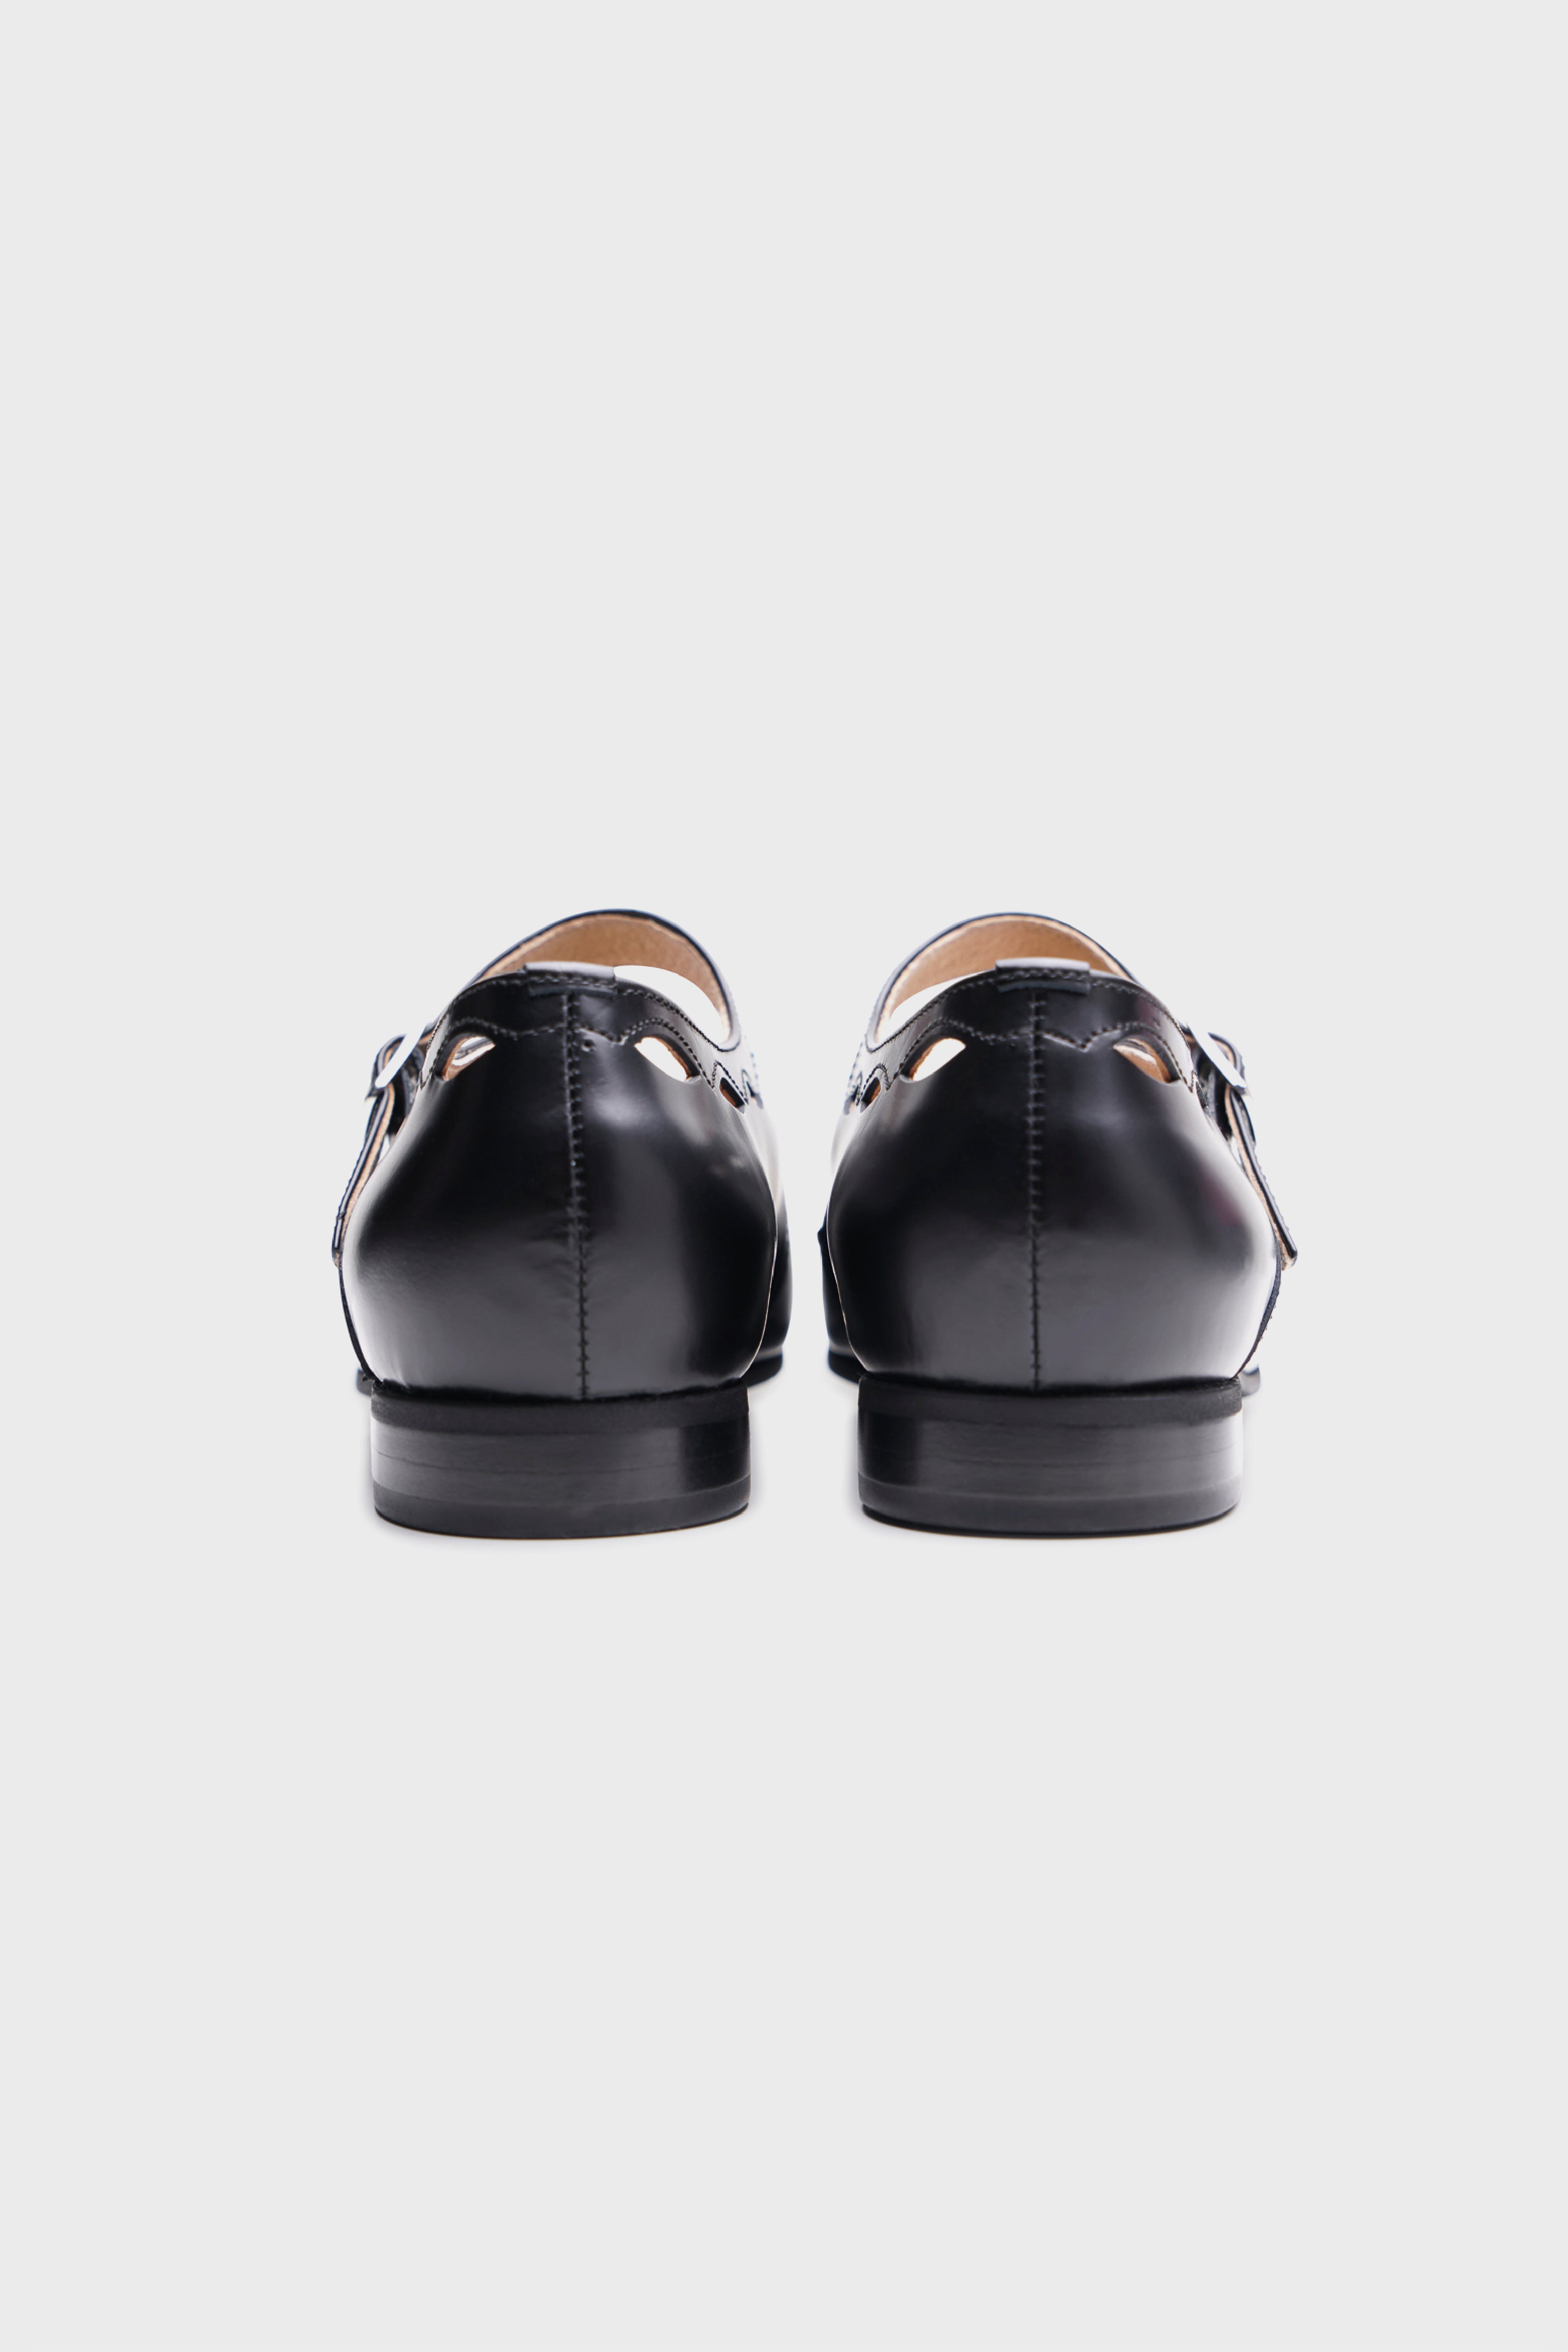 Selectshop FRAME - COMME DES GARÇONS GIRL Shoes Footwear Dubai